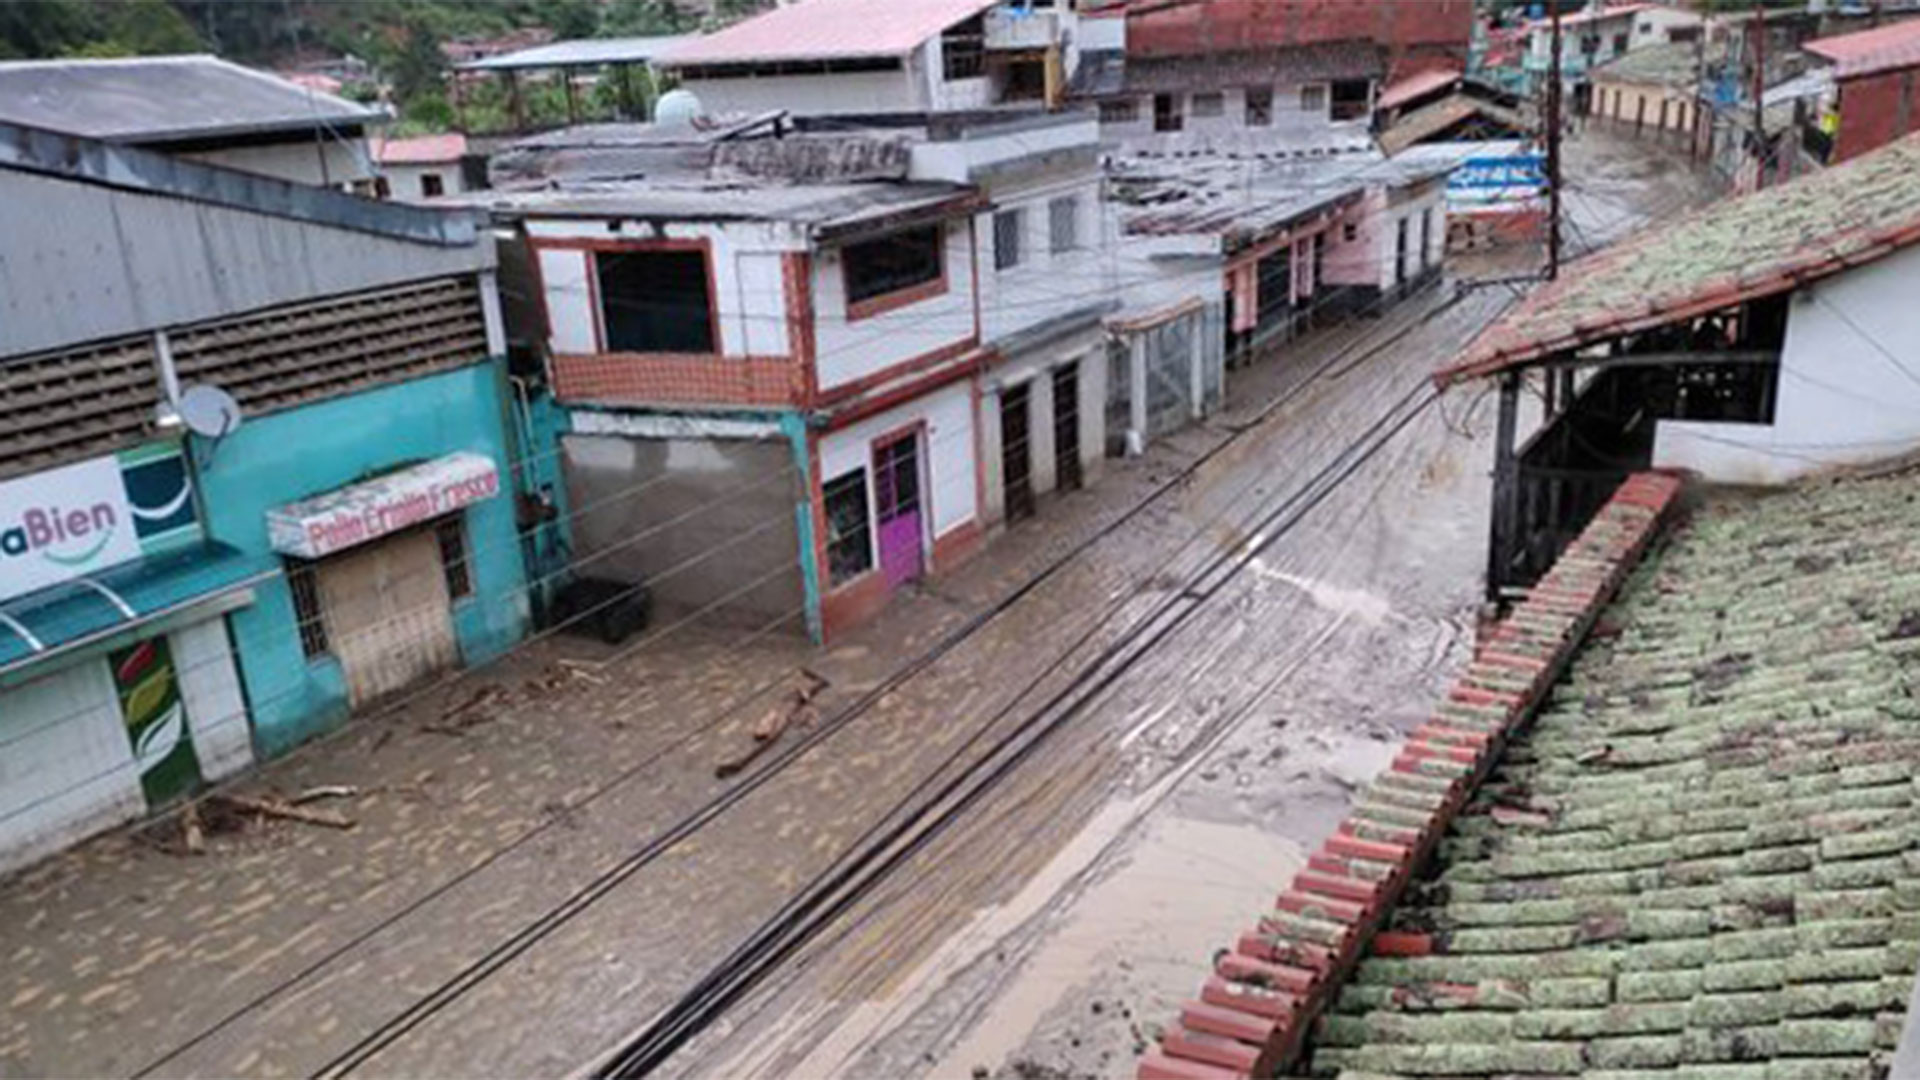 Floods in Venezuela